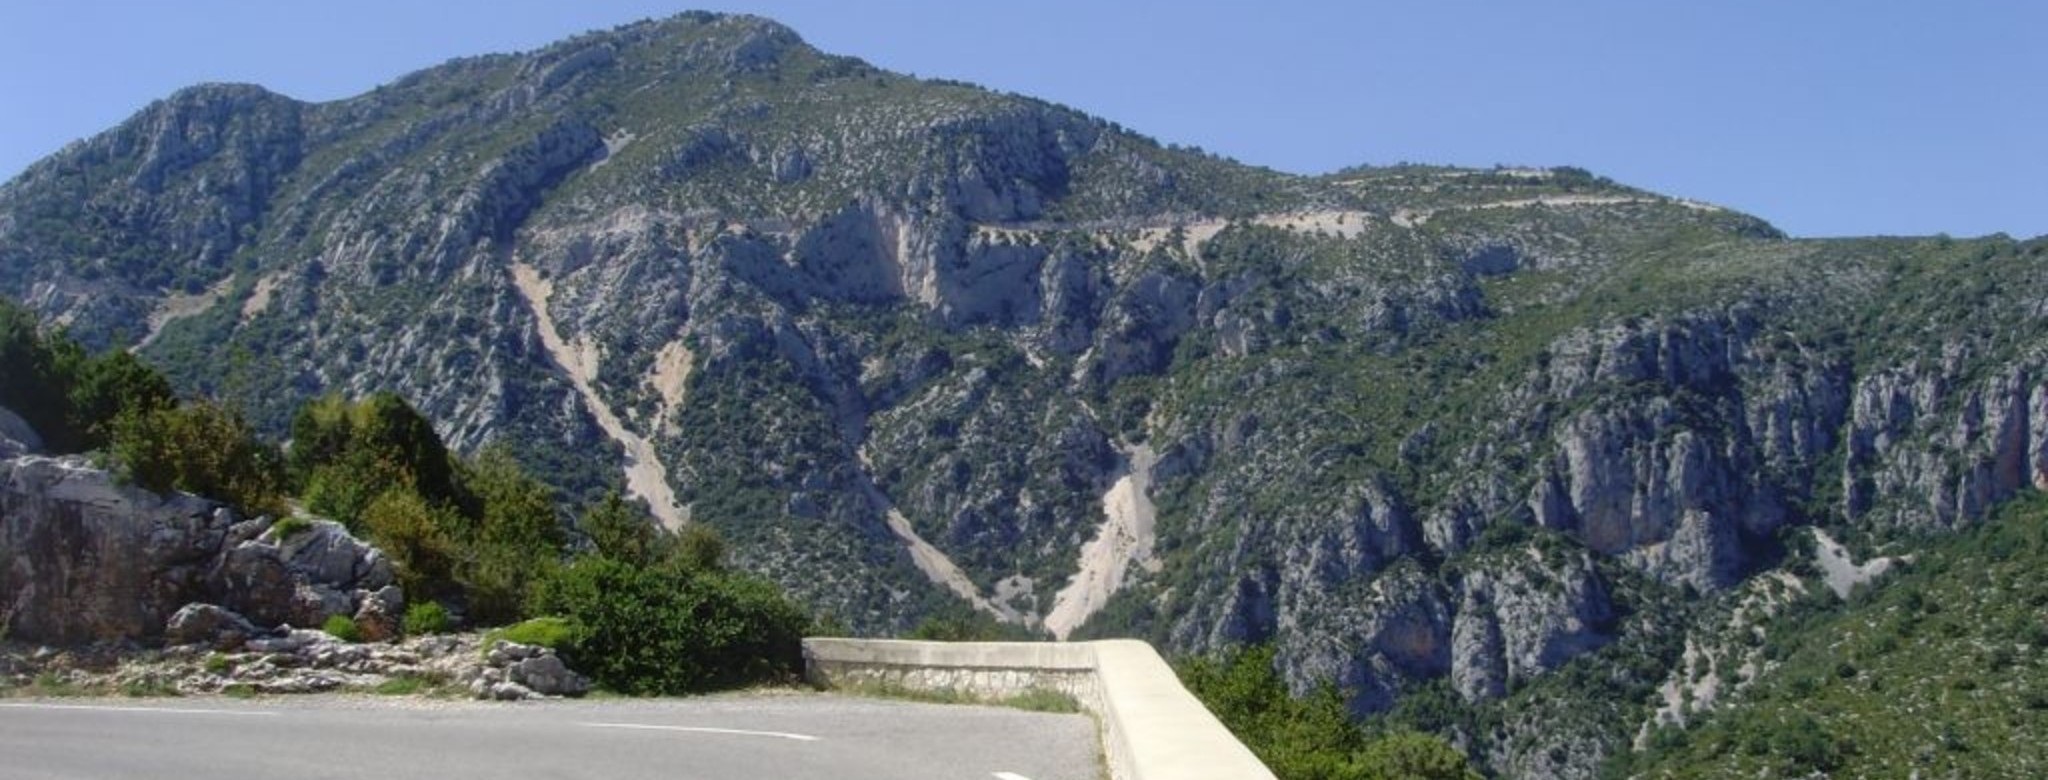 Route des Cretes in der Verdonschlucht.